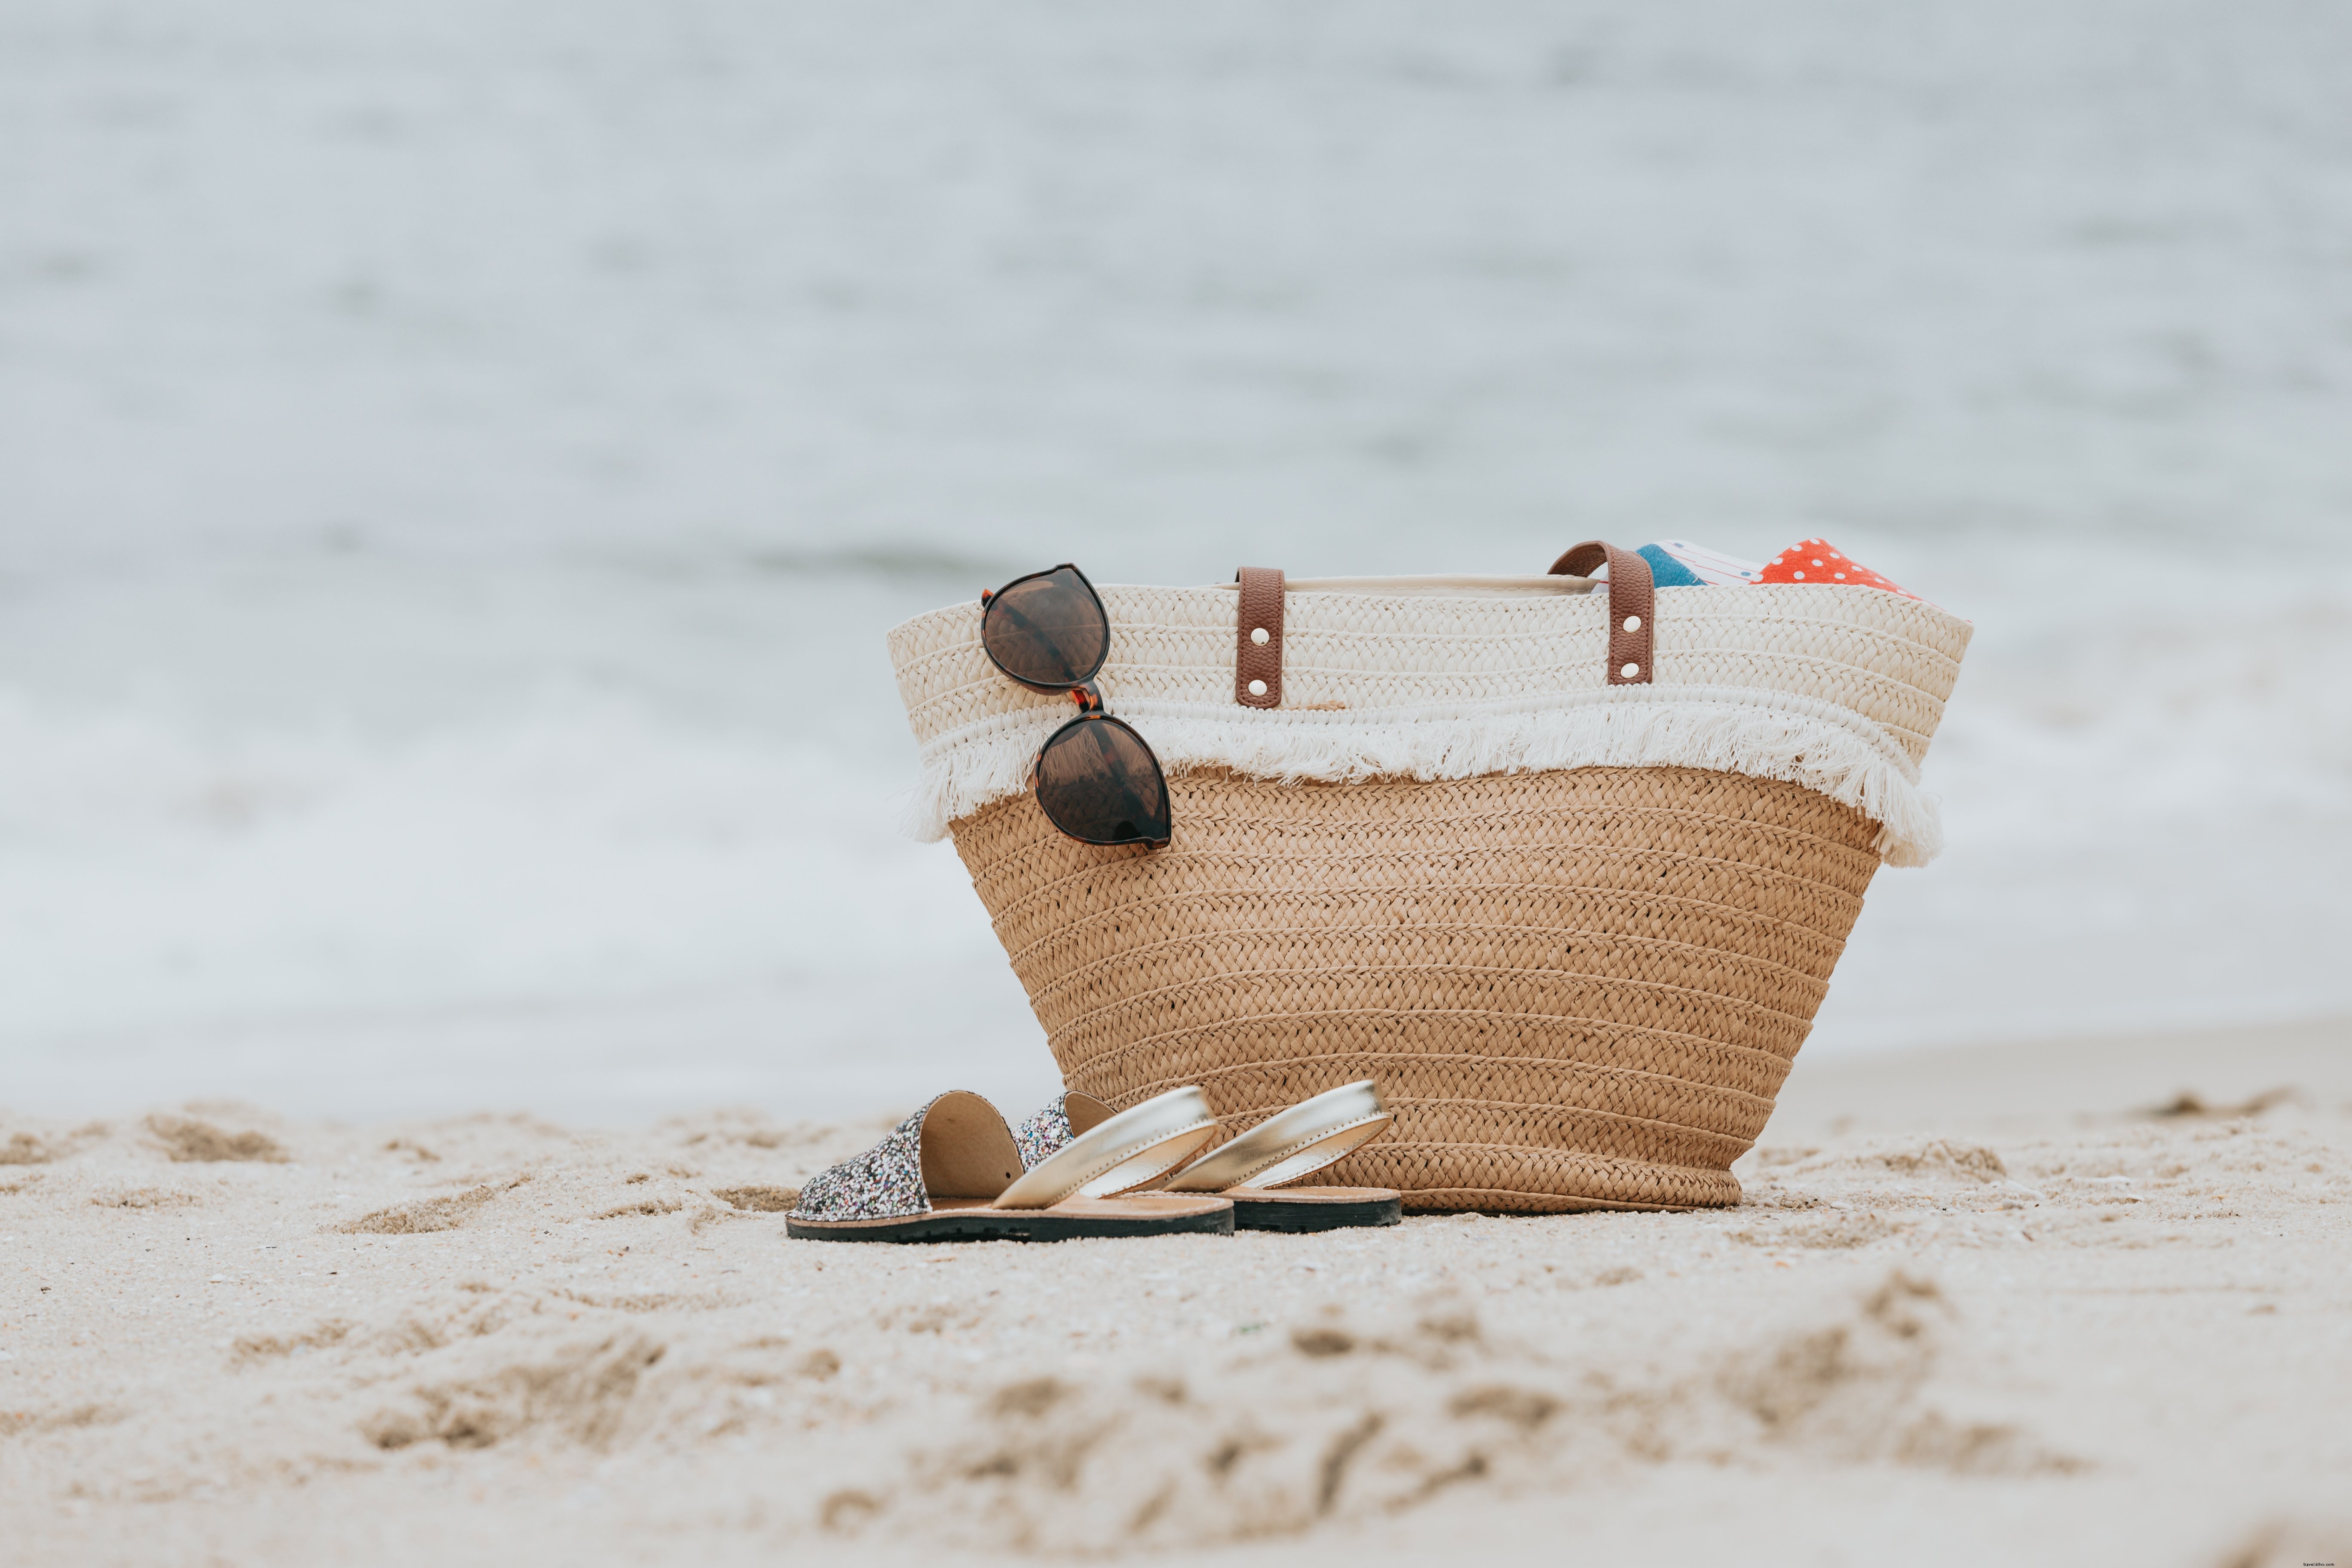 Sandalias y una bolsa de playa en una playa de arena blanca Foto 